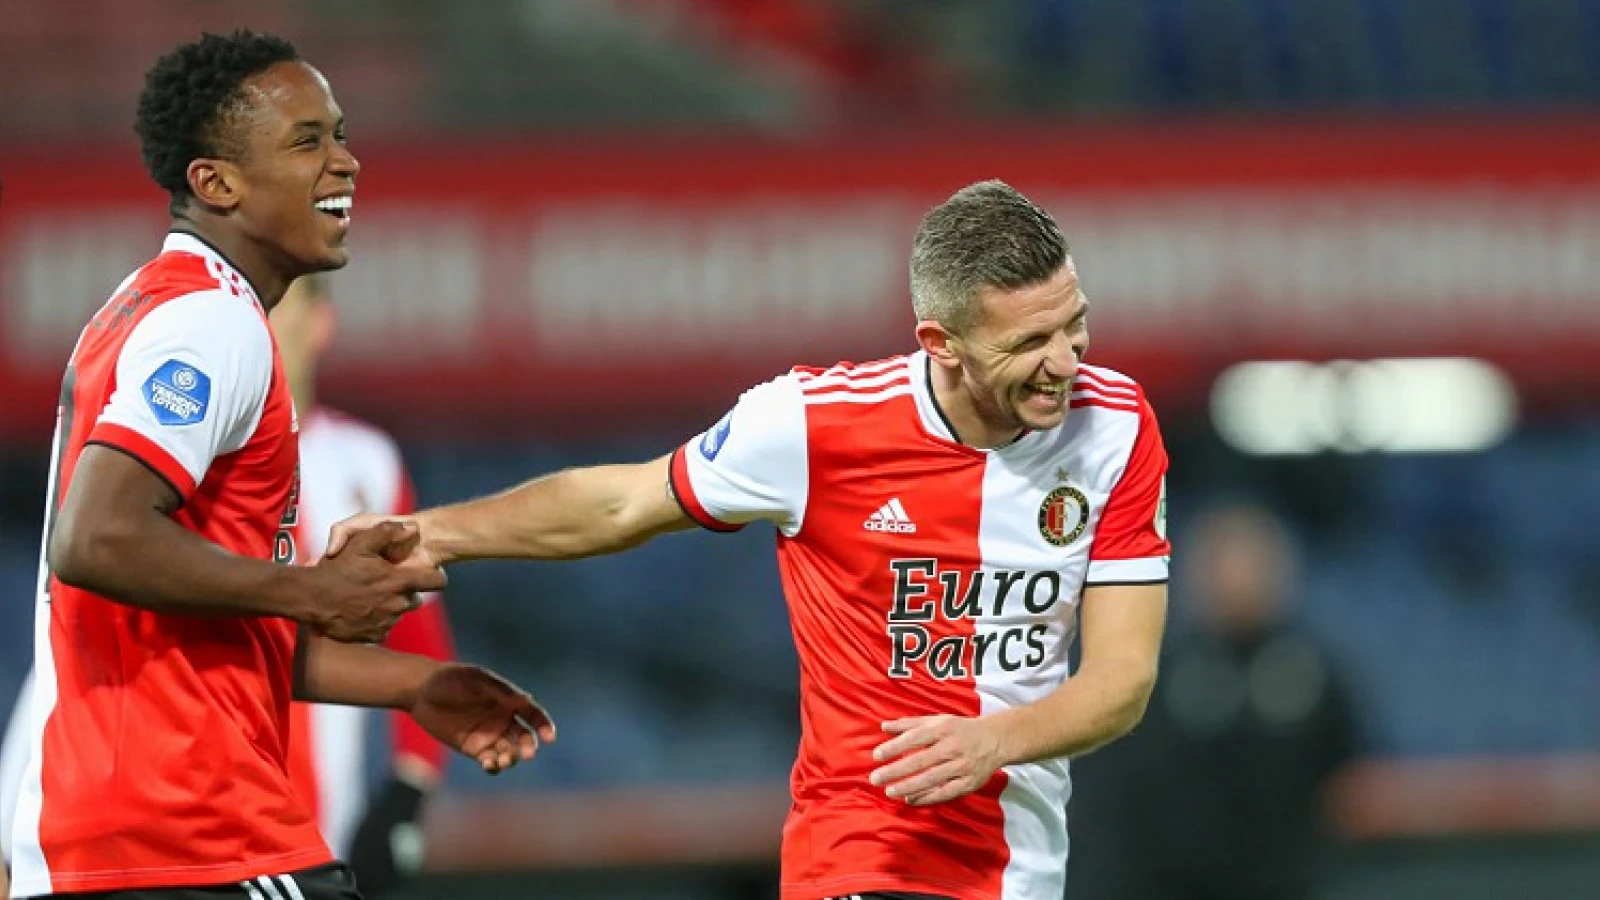 Feyenoord wint met overtuigende cijfers van Fortuna Sittard